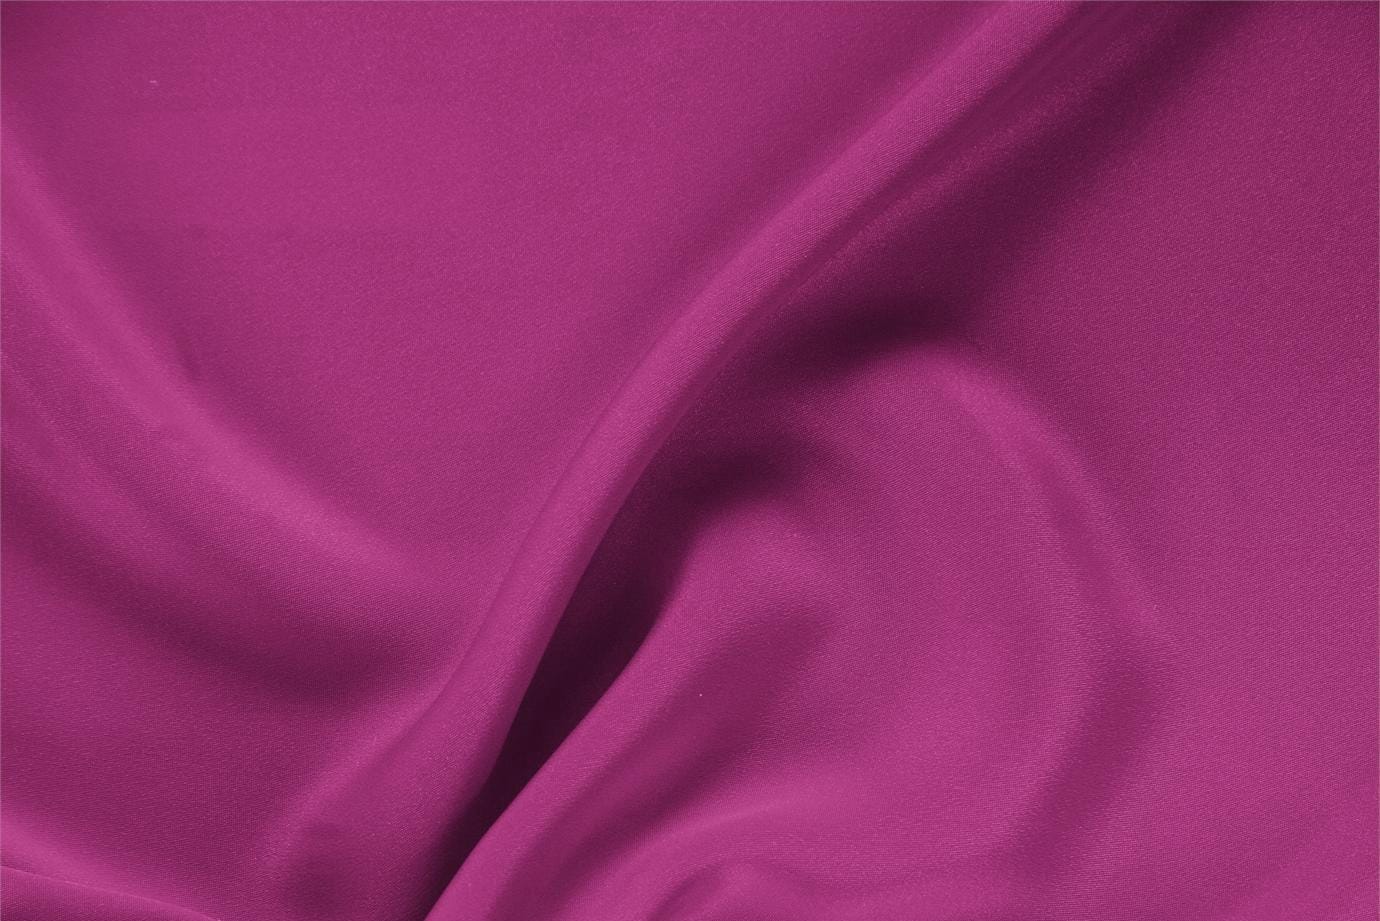 Tissu Drap Violet iris en Soie pour vêtements